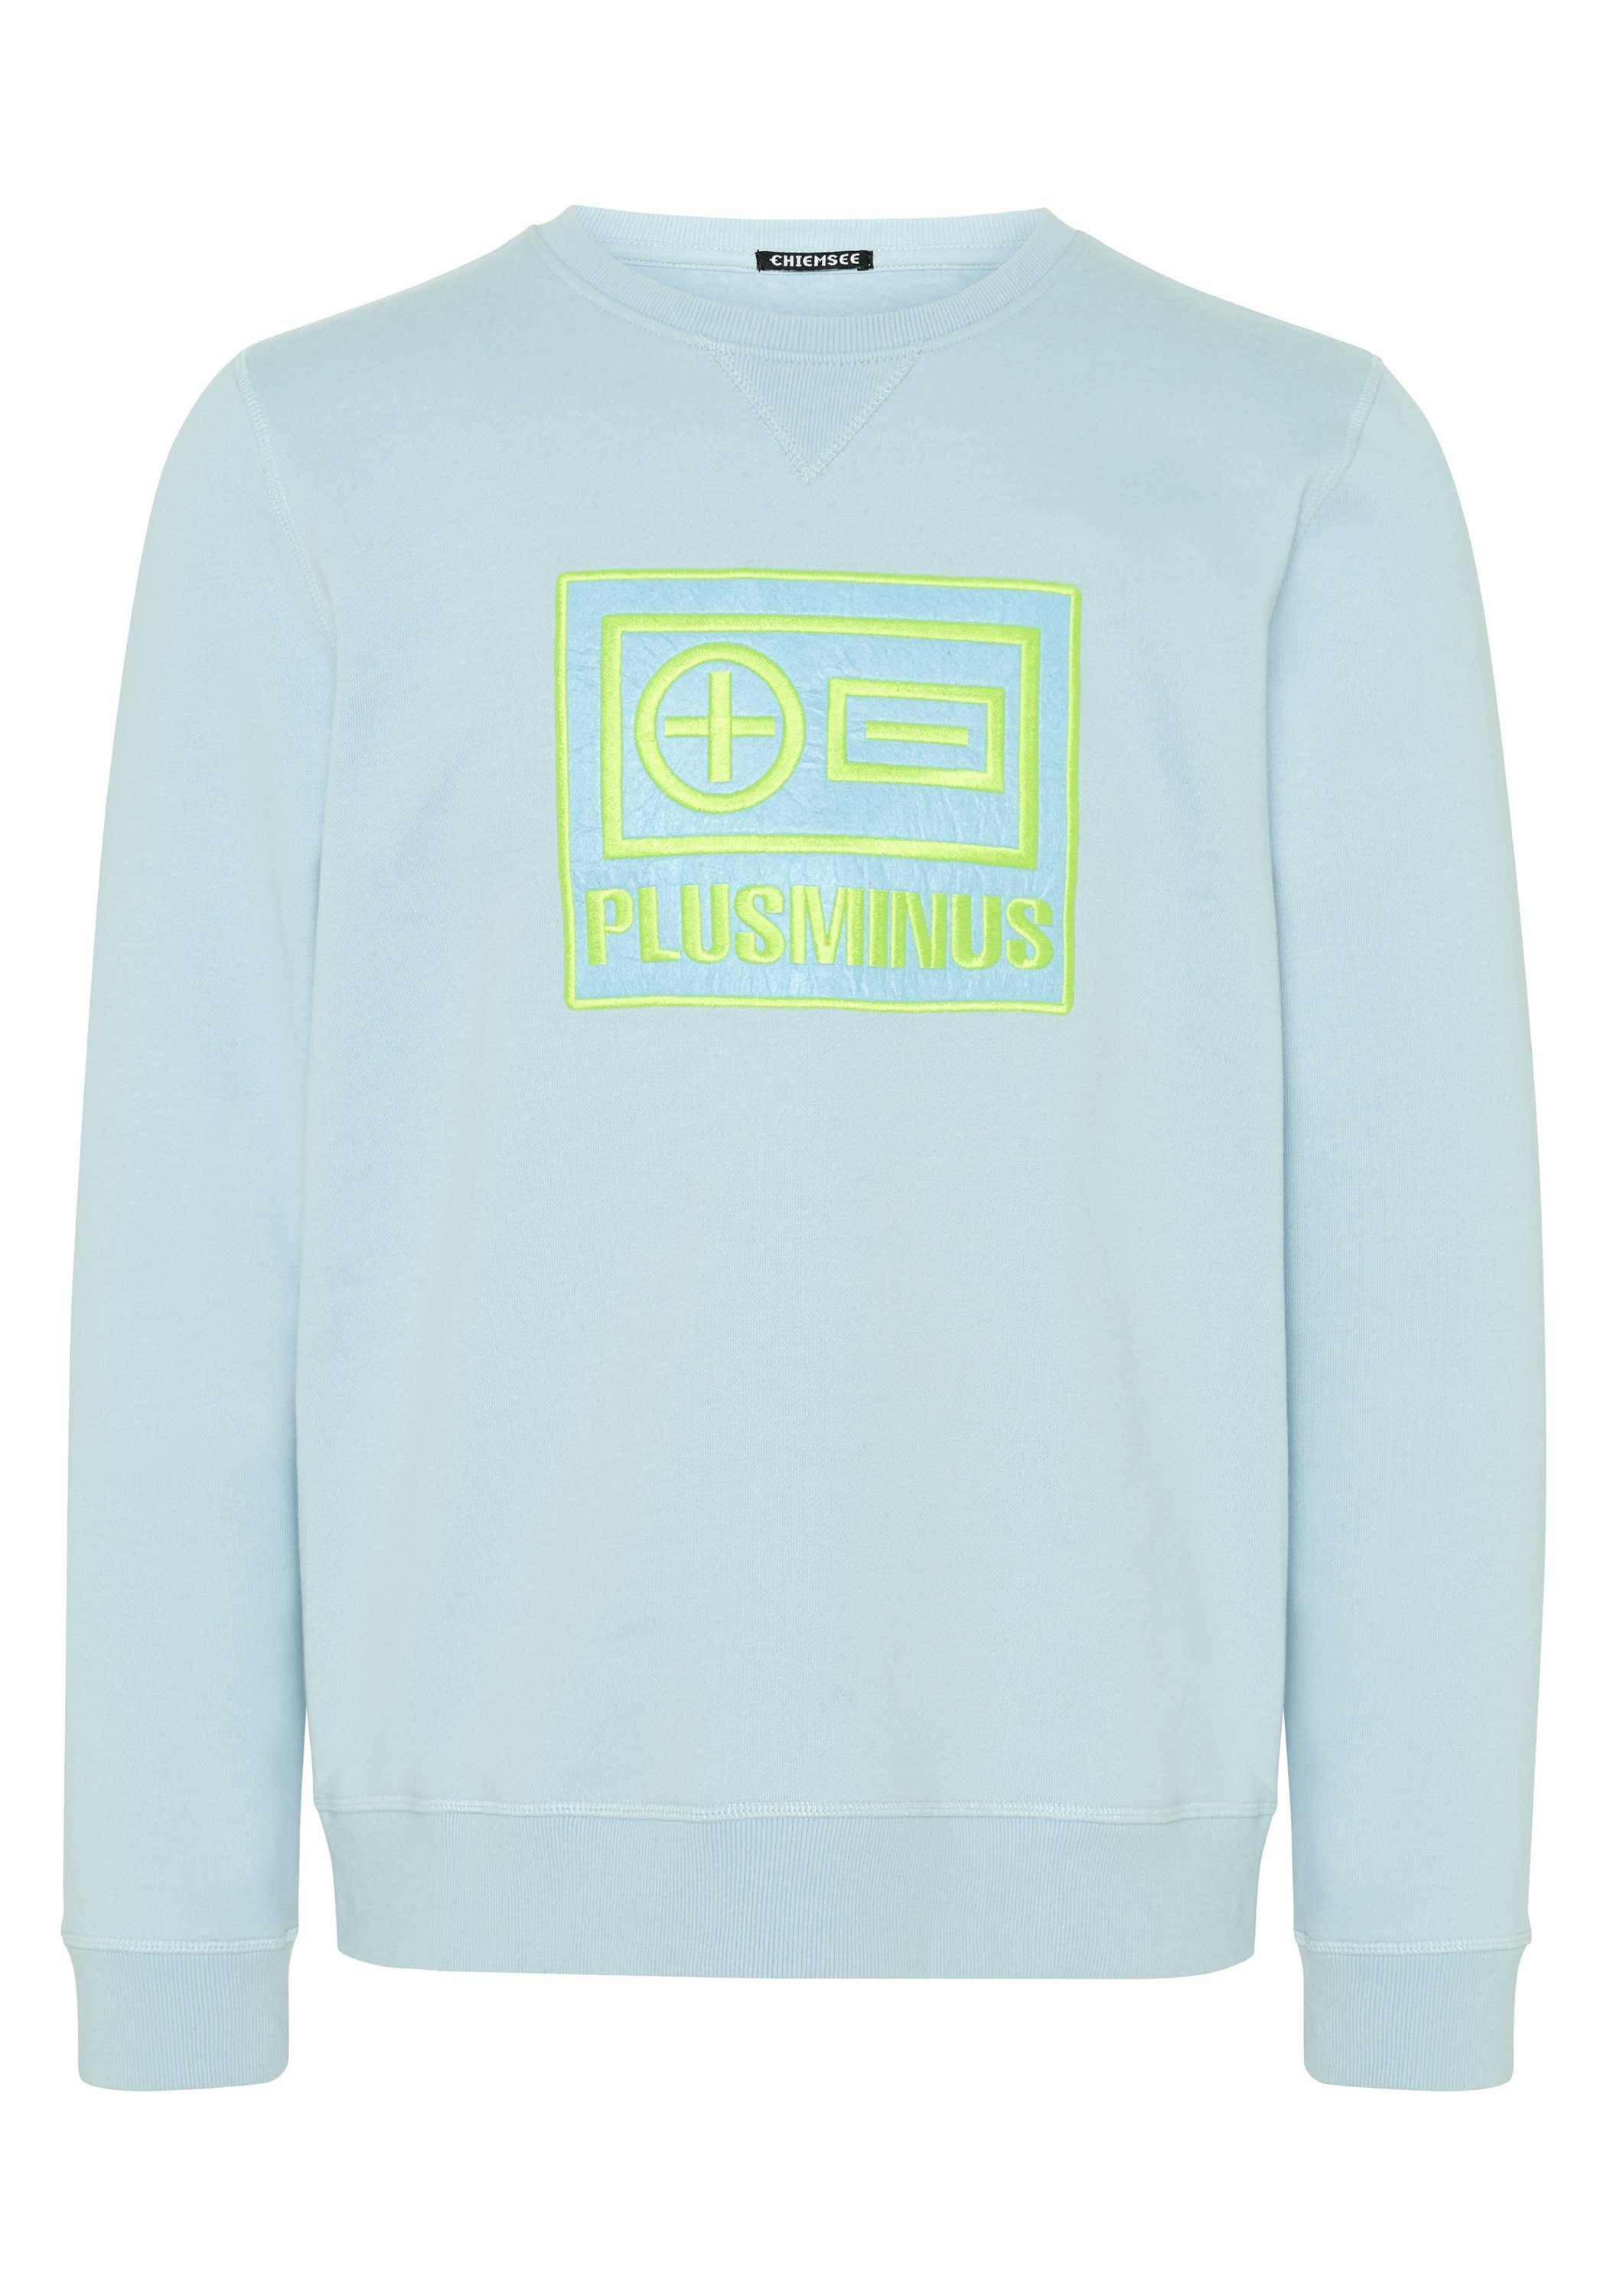 Chiemsee Sweatshirt Sweatshirt im trendigen PlusMinus-Design 1 mittel blau